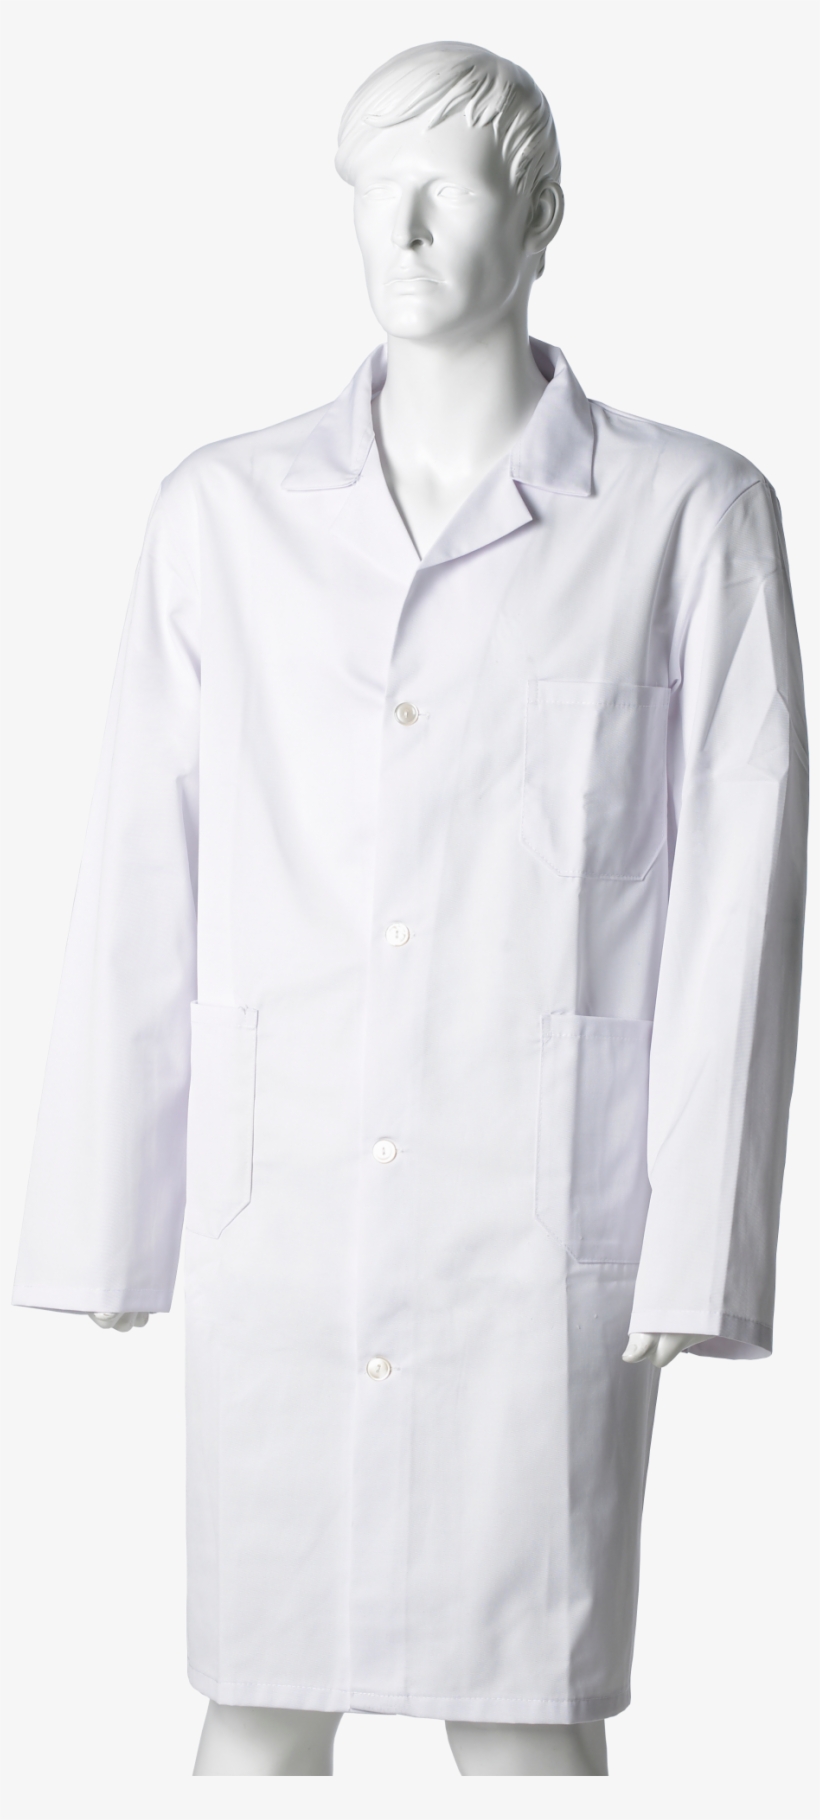 Chef Coat Or Lab Coat - Chef's Uniform, transparent png #4830128